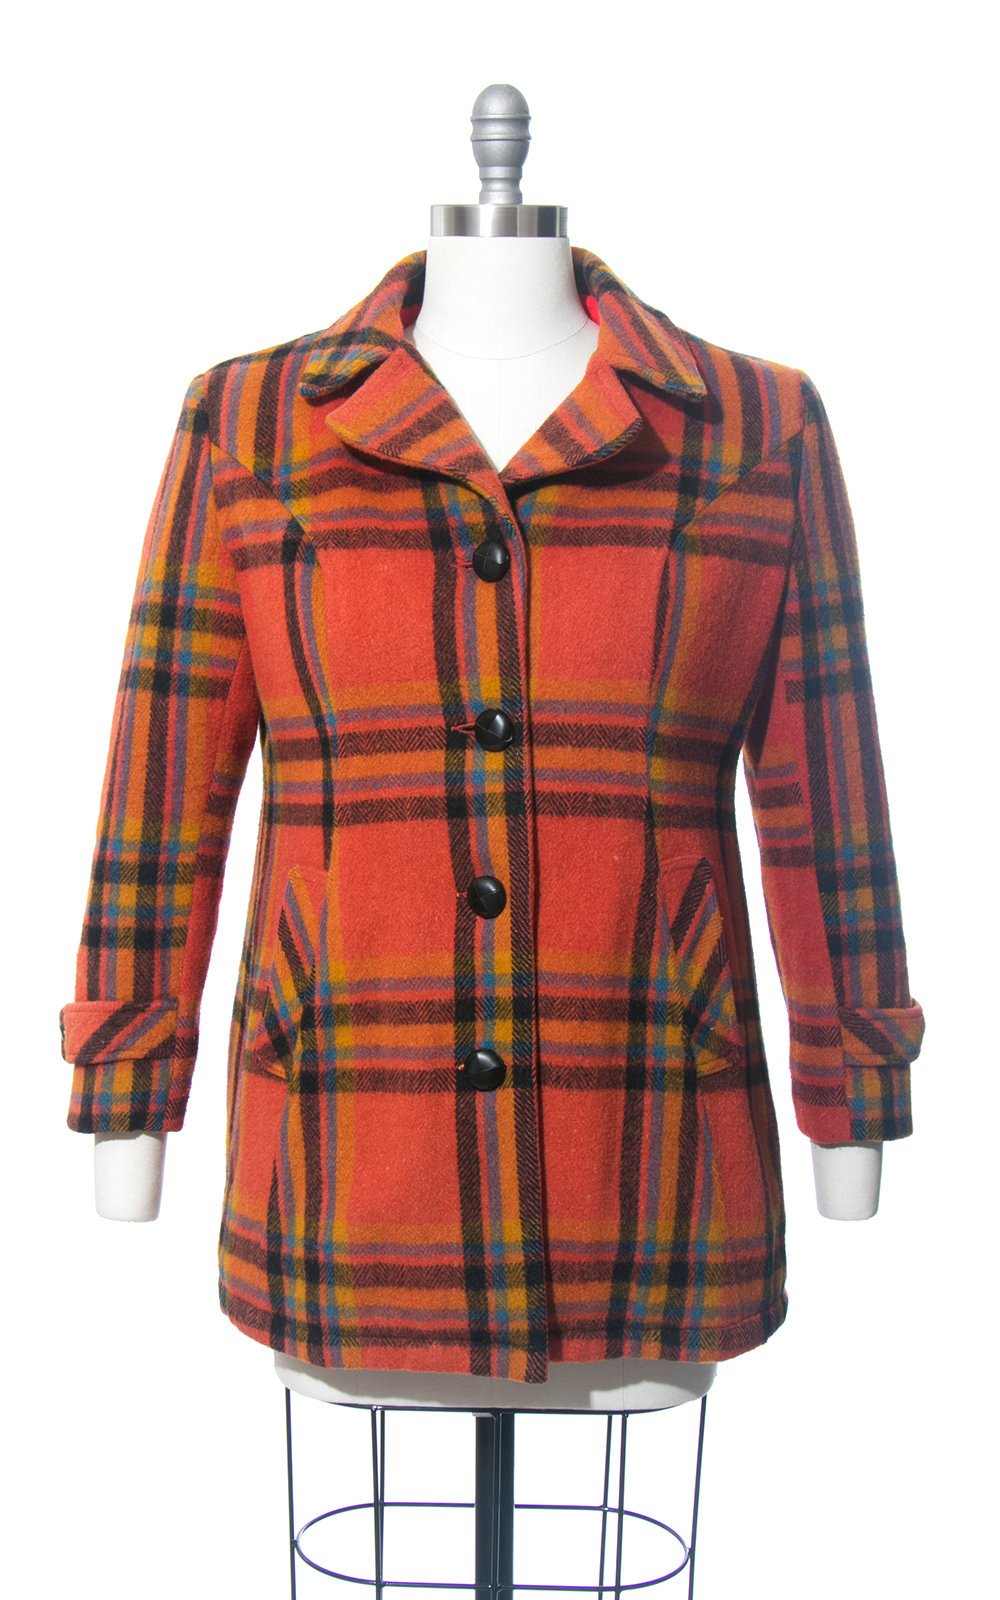 Plaid Wool Coat, Size Medium M, Red Short Jacket, Wool Blend Coat, Retro  Jacket, Short Coat, 70s Vintage Clothing, Womens Clothing -  Canada